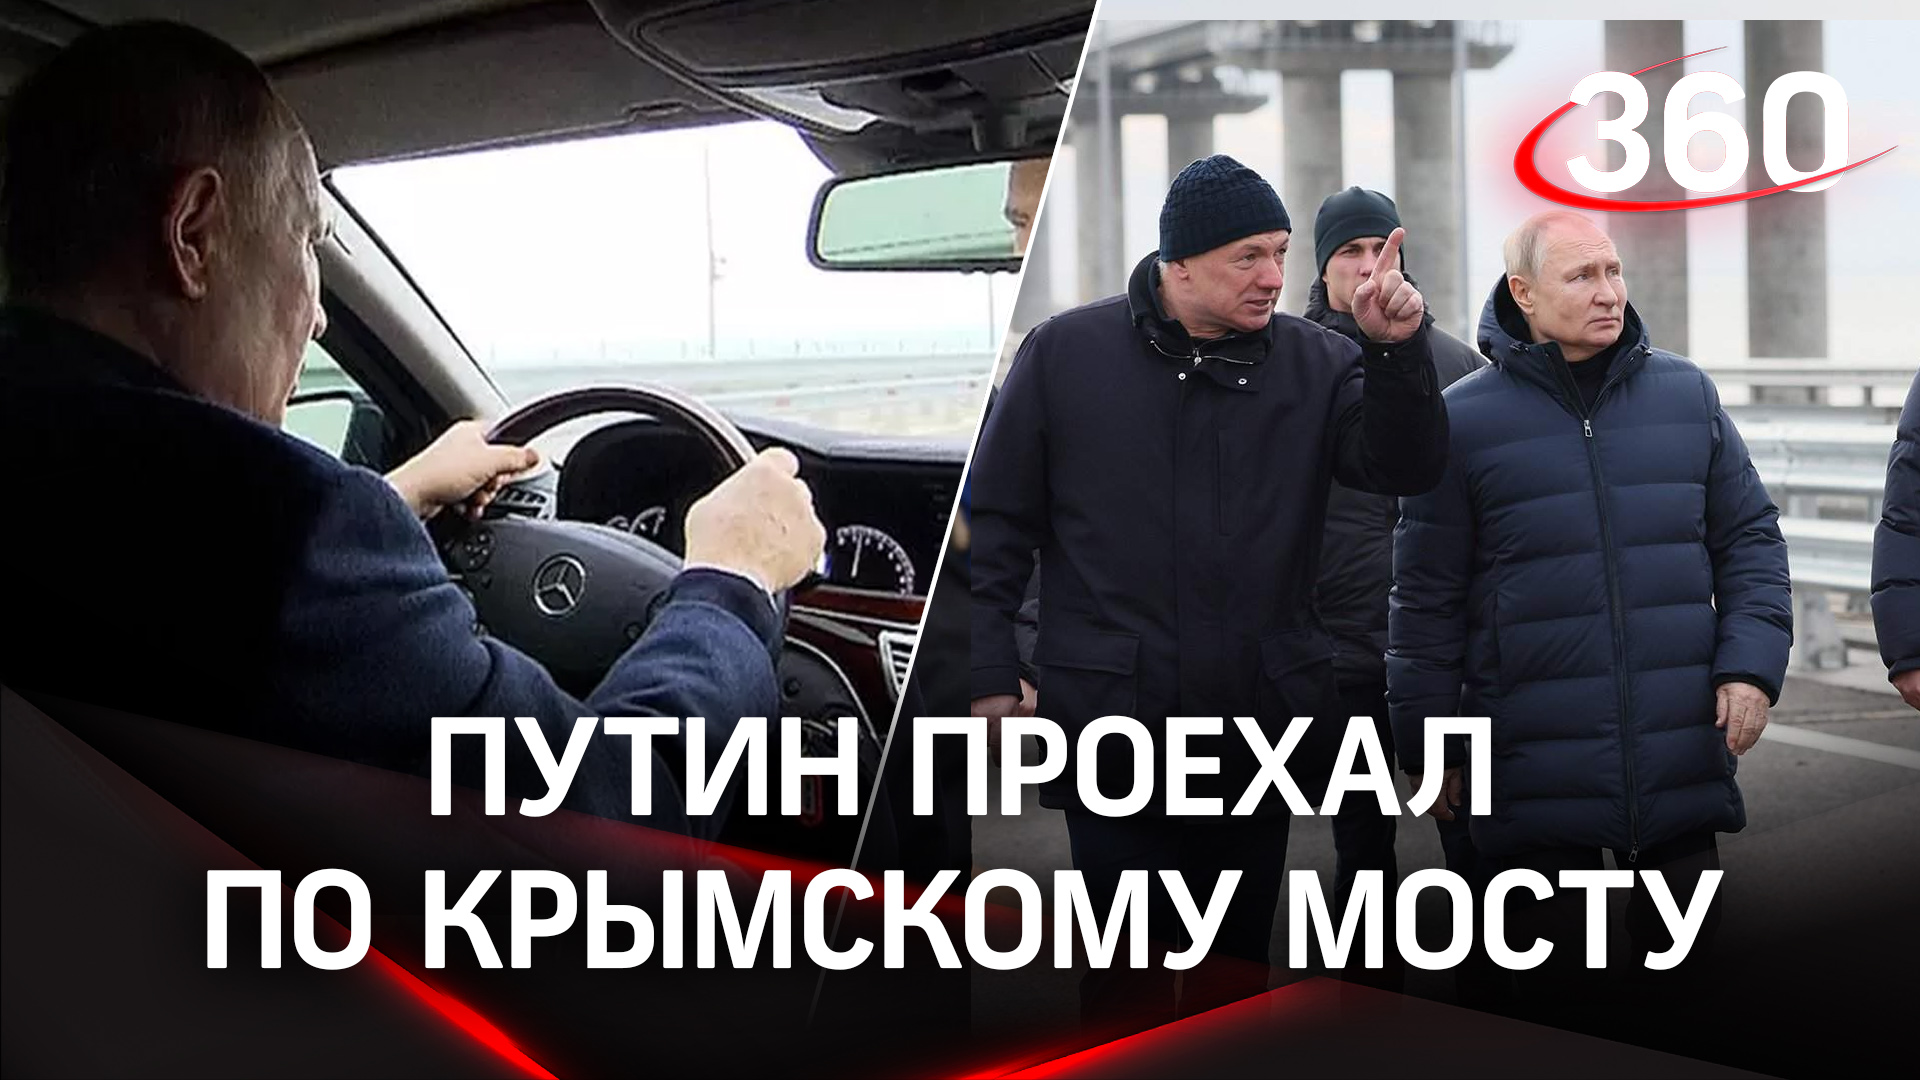 Путин прокатился по отремонтированному Крымскому мосту на Мерседесе